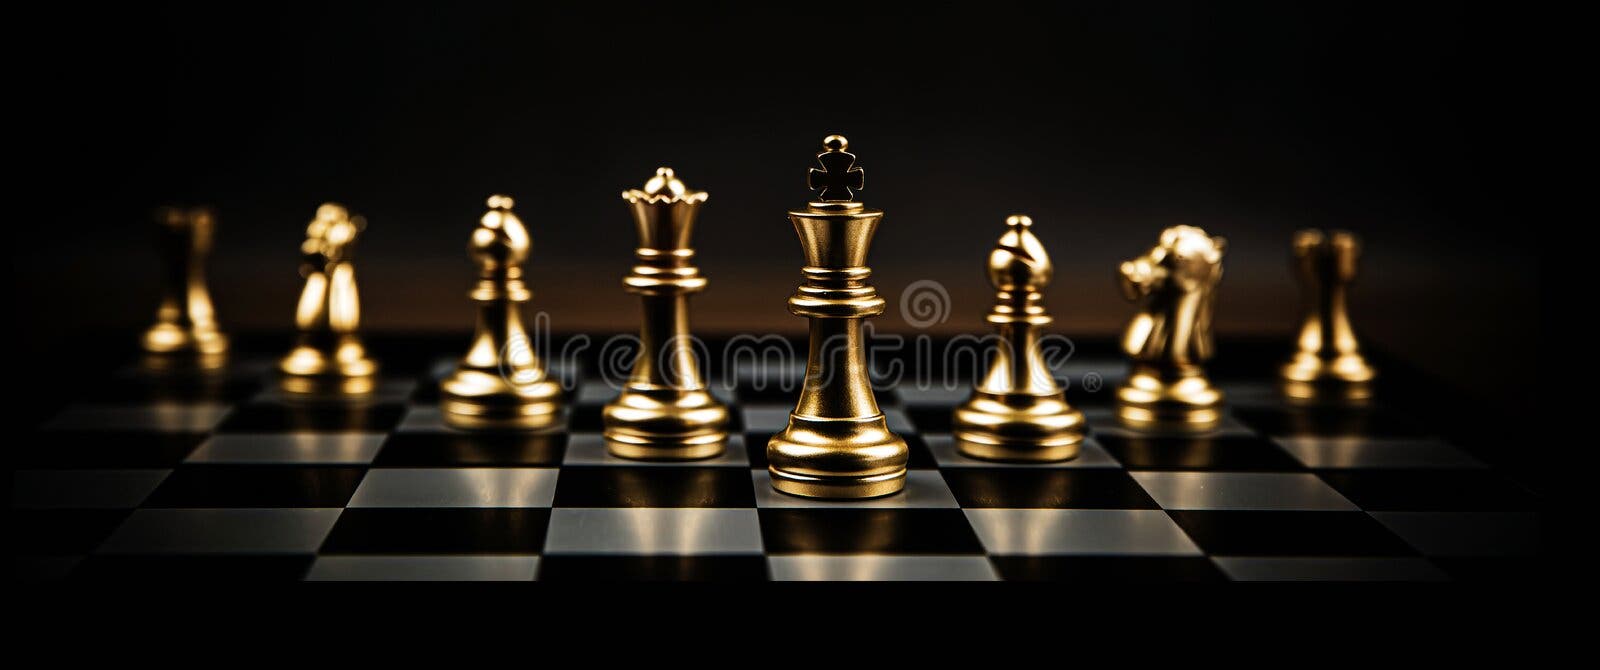 A Peça De Xadrez Do Rei Dourado Que Fica No Tabuleiro De Xadrez. Imagem de  Stock - Imagem de potência, partes: 247381585